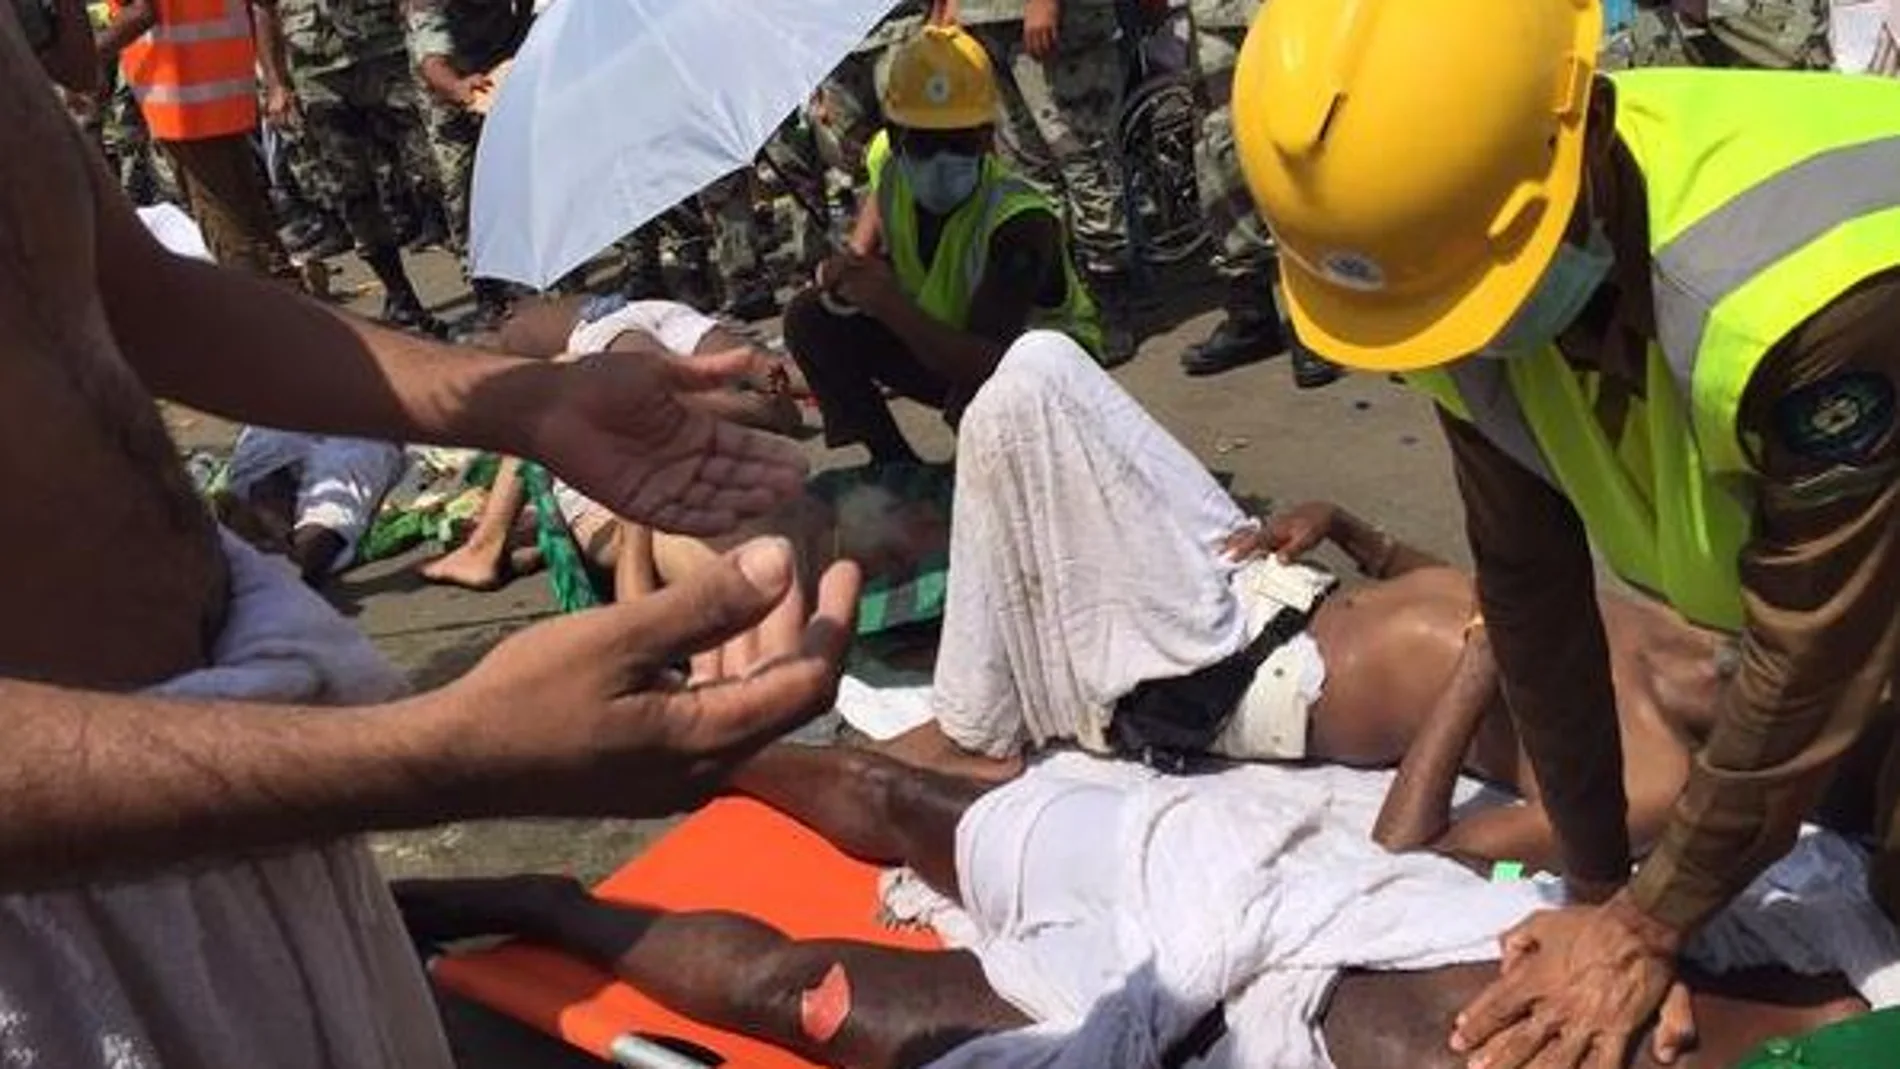 Los servicios de emergencia atienden a uno de los heridos